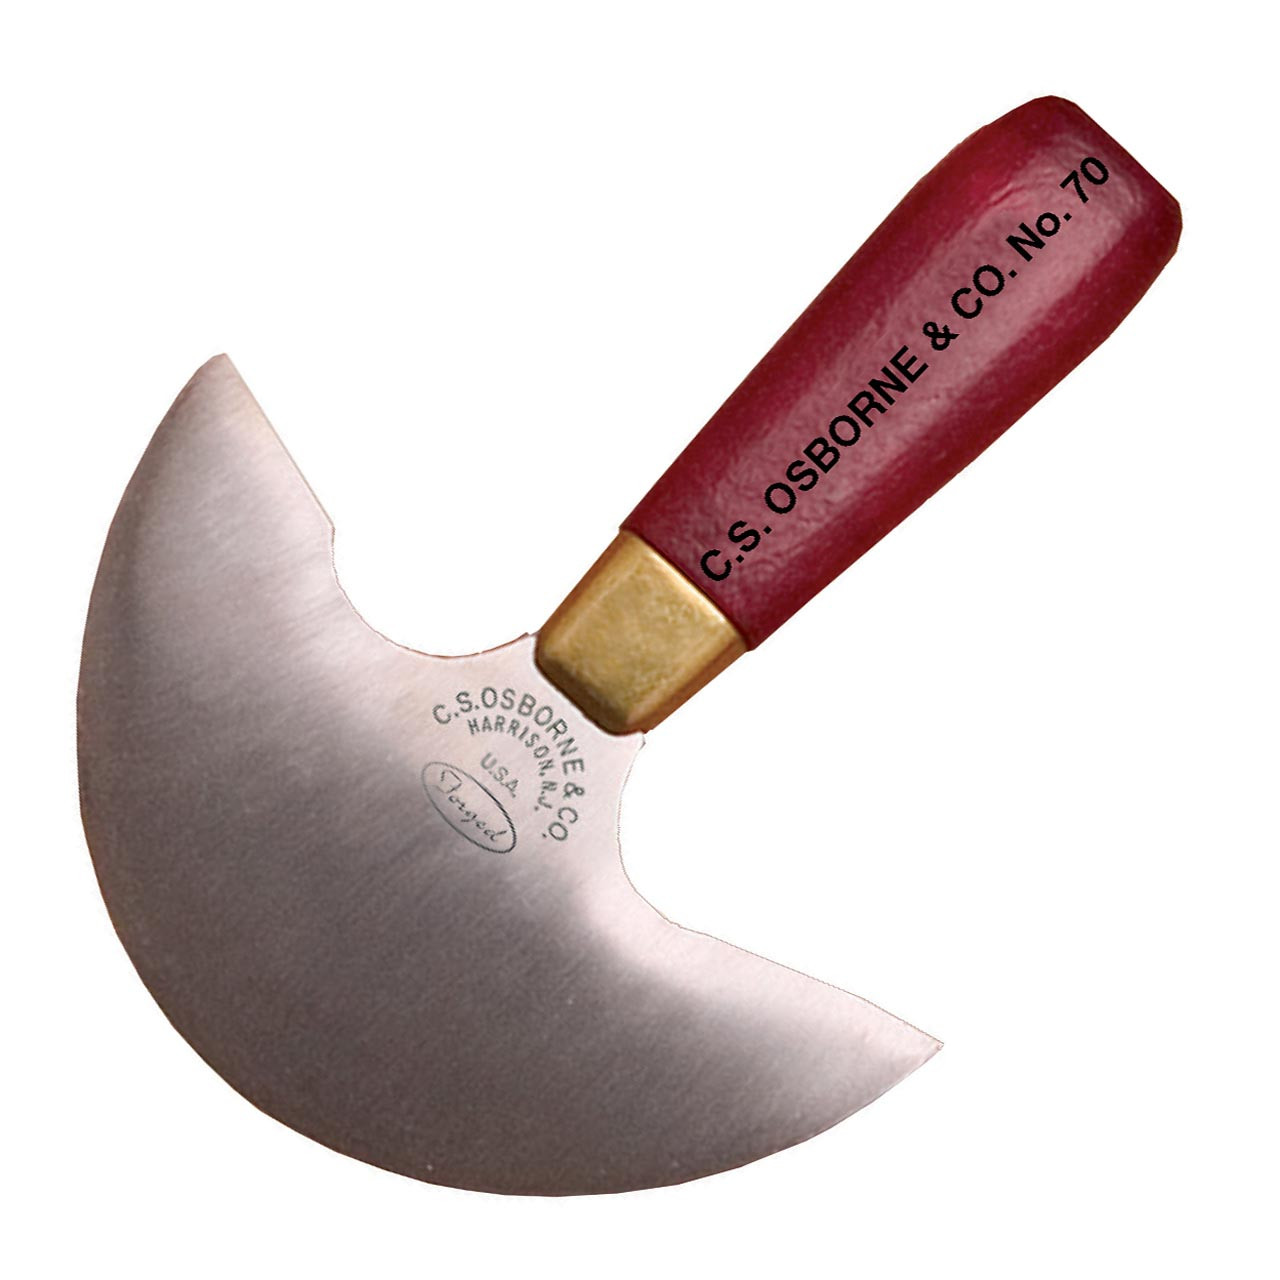  C.S. Osborne Leather & Skiving Knife #67-0 (2 Long